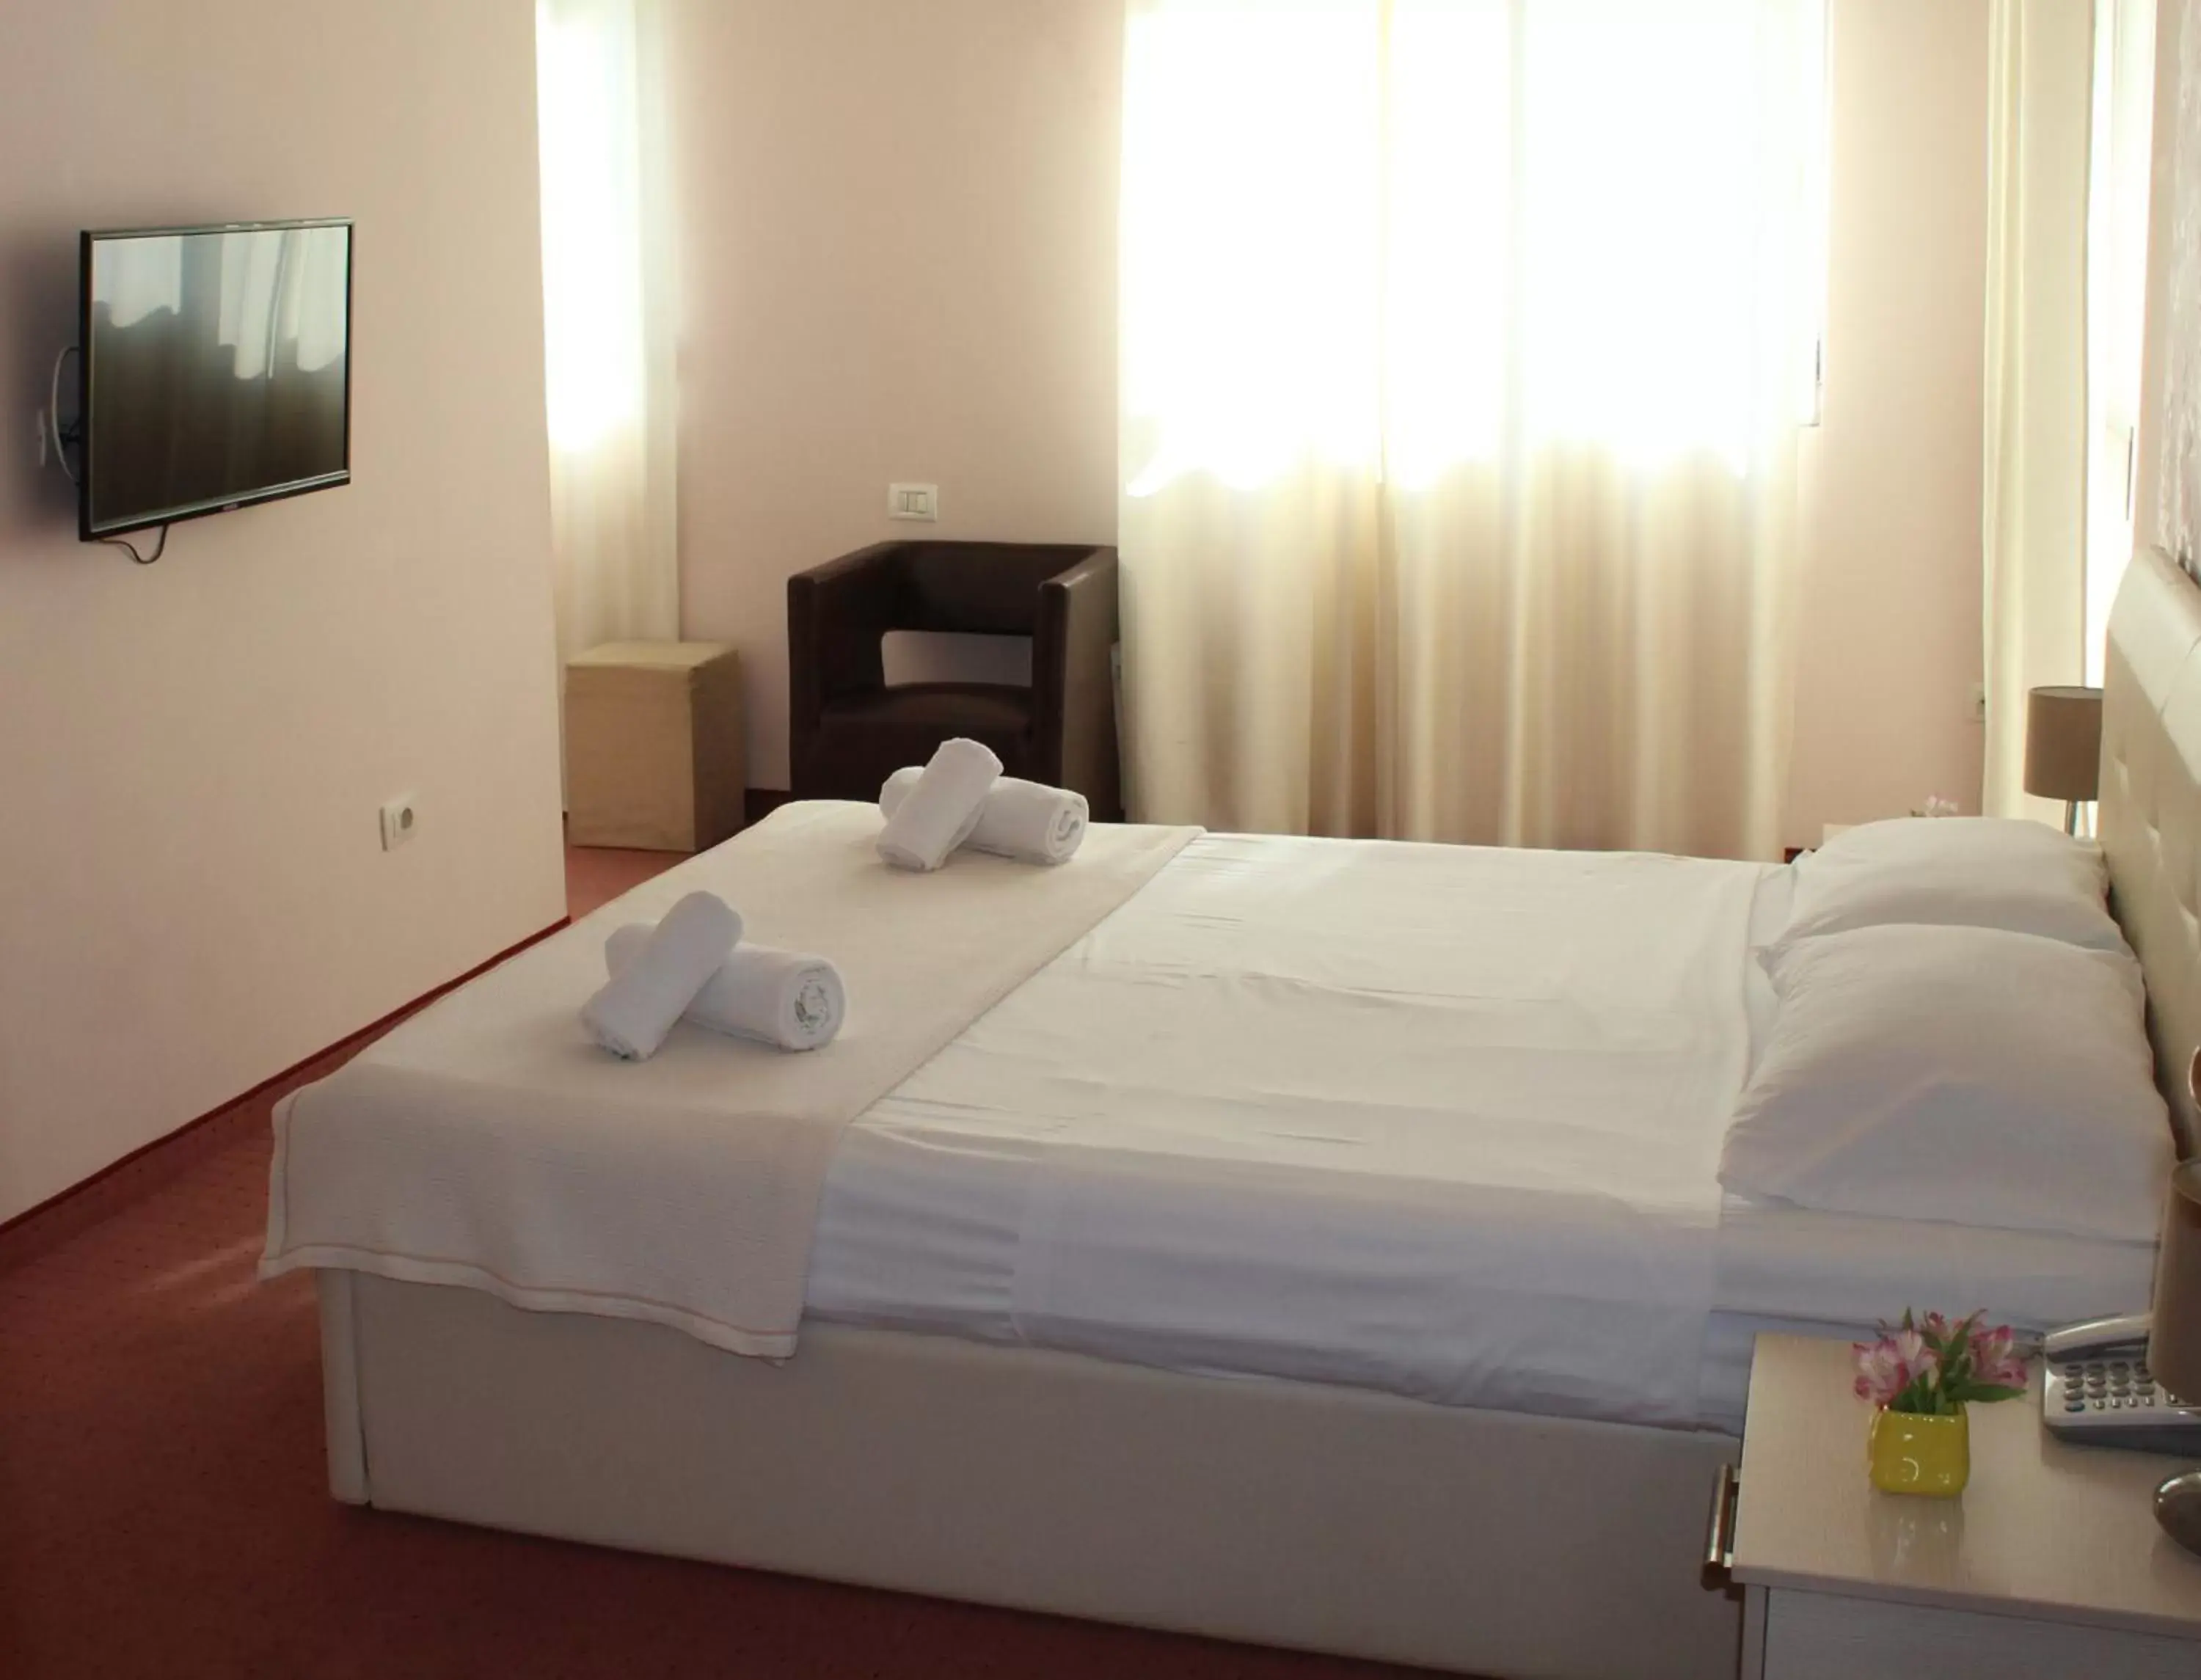 Bed in Signature Idea hotel